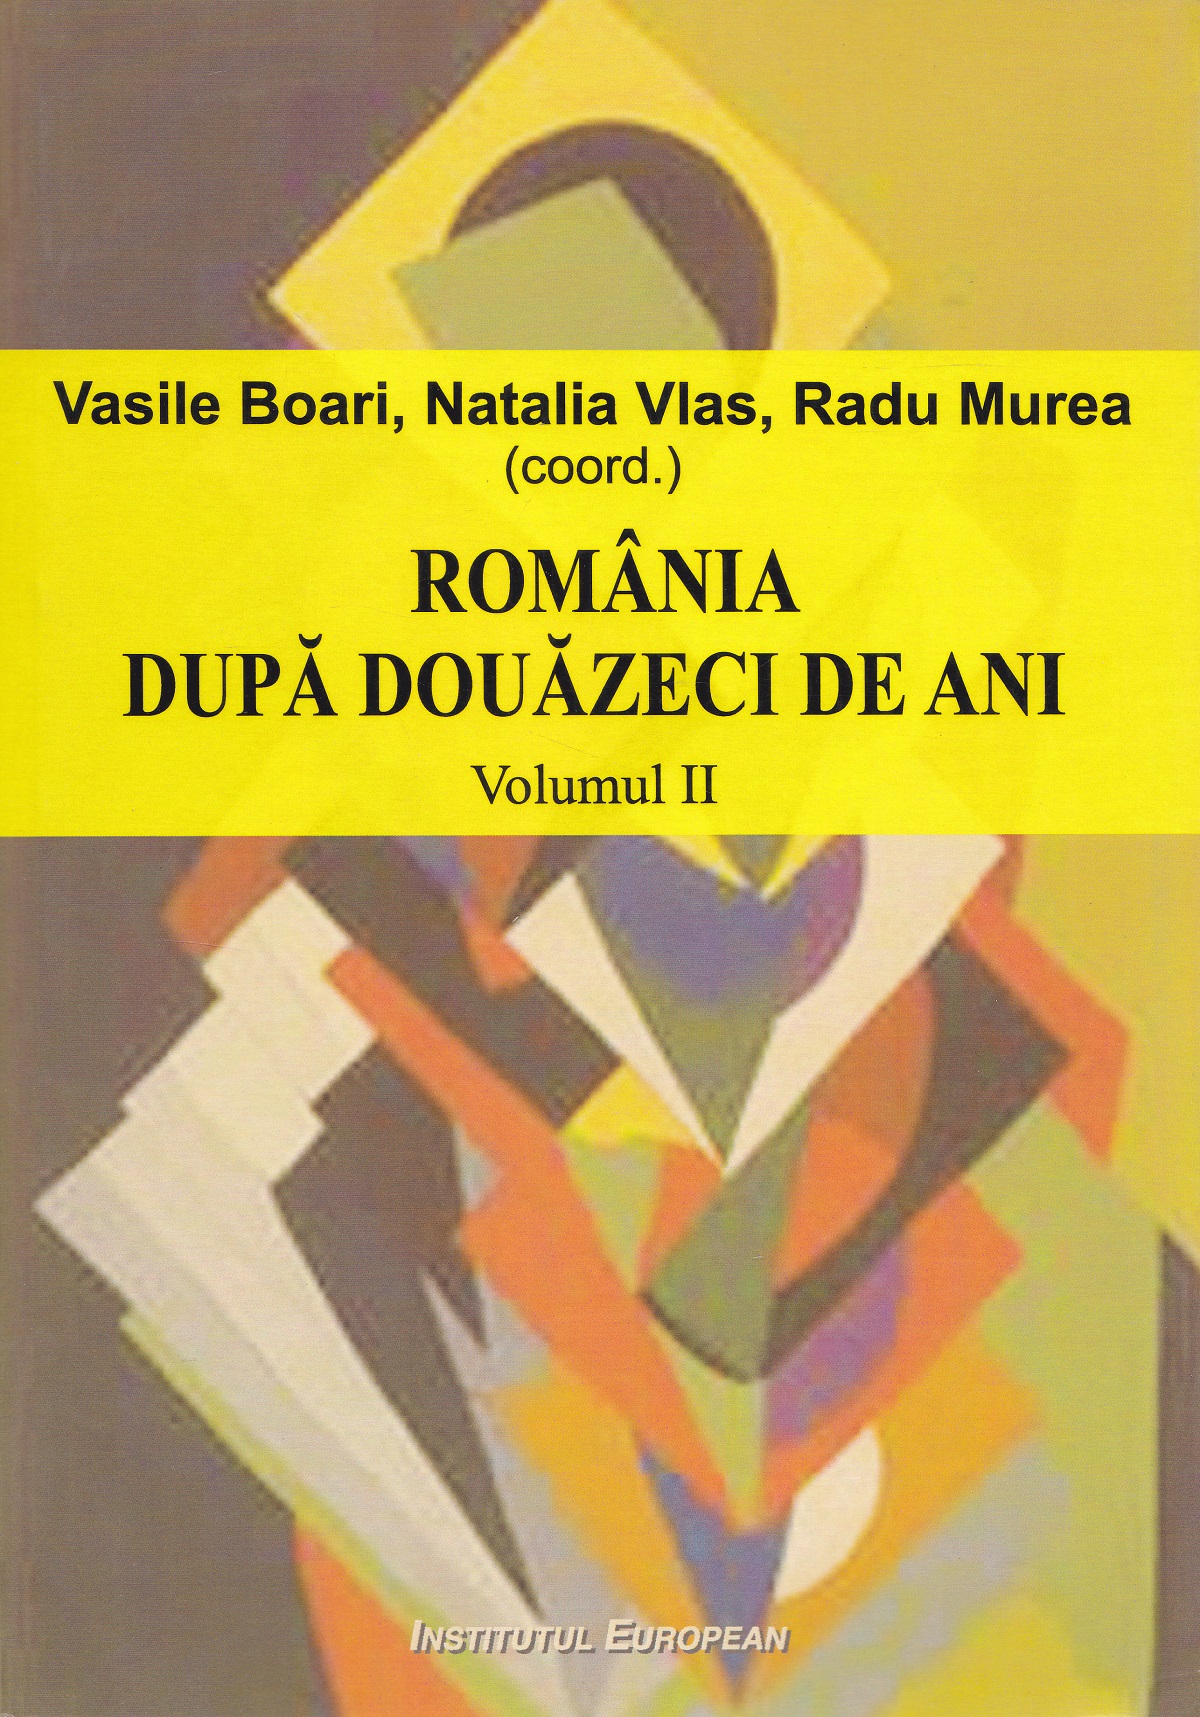 Romania dupa douazeci de ani - Vol. 2 - Vasile Boari, Natalia Vlas, Radu Murea